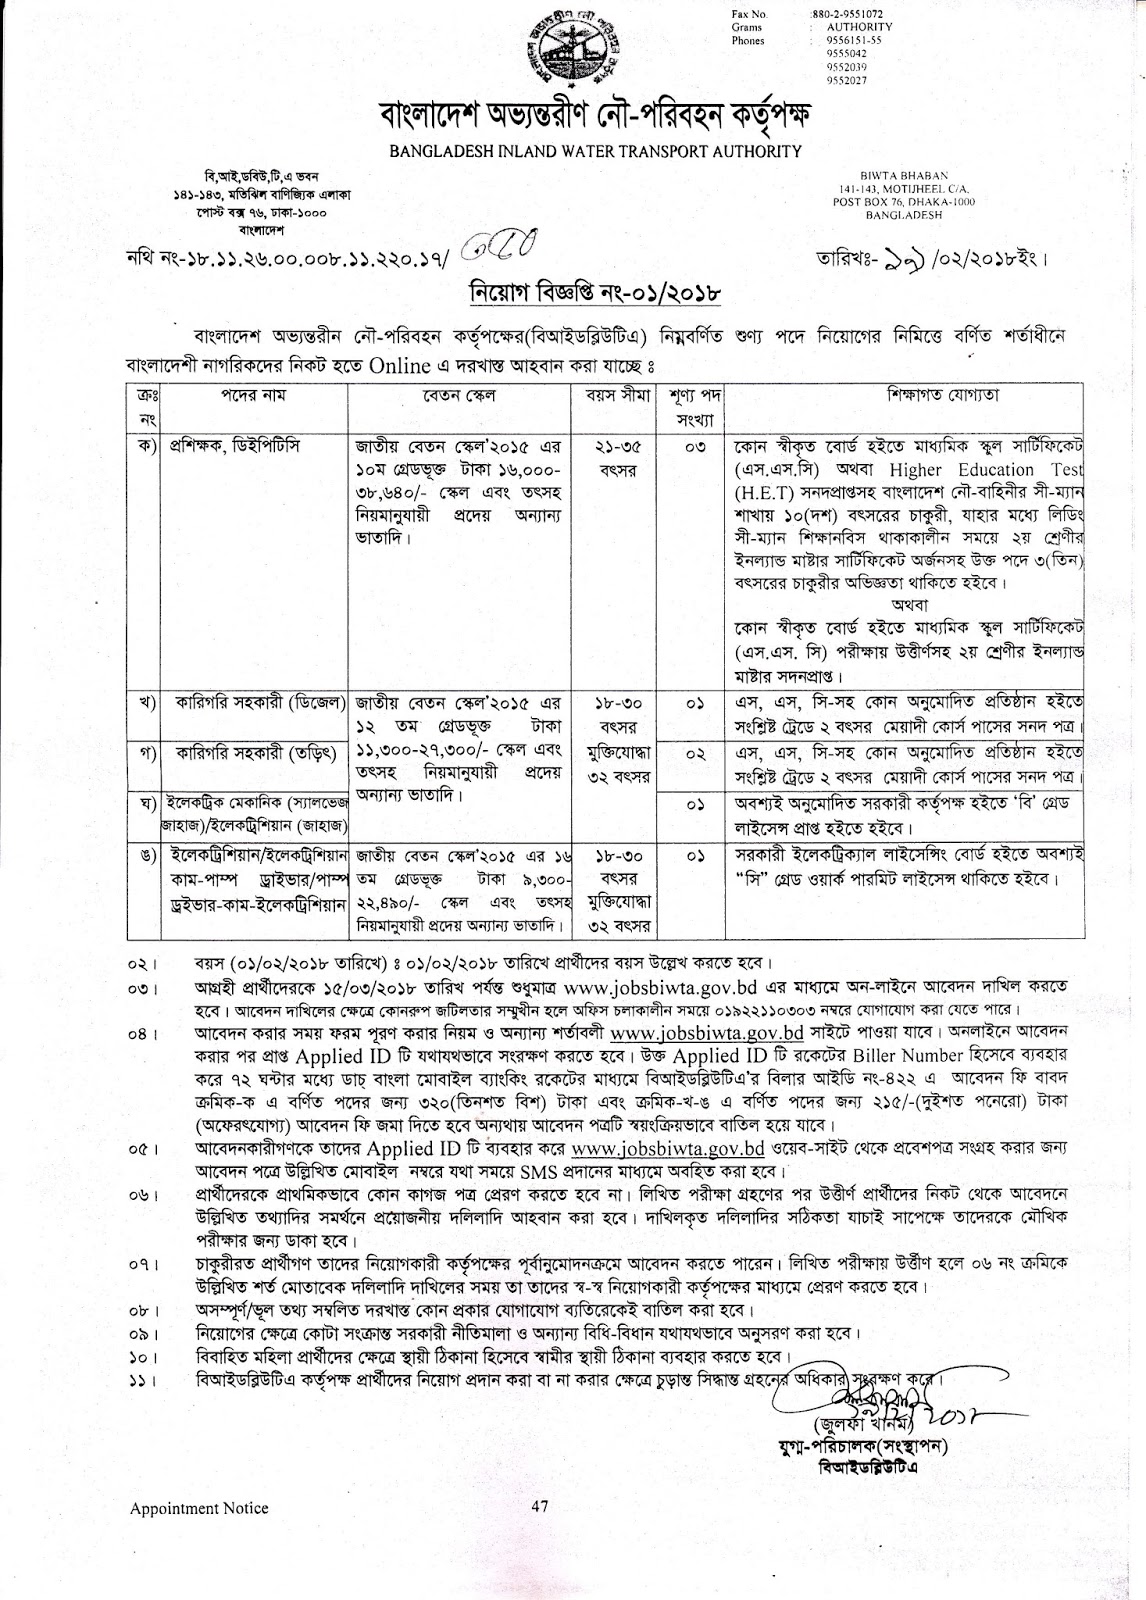 BIWTA - Bangladesh Inland Water Transport Authority Job Circular 2018 